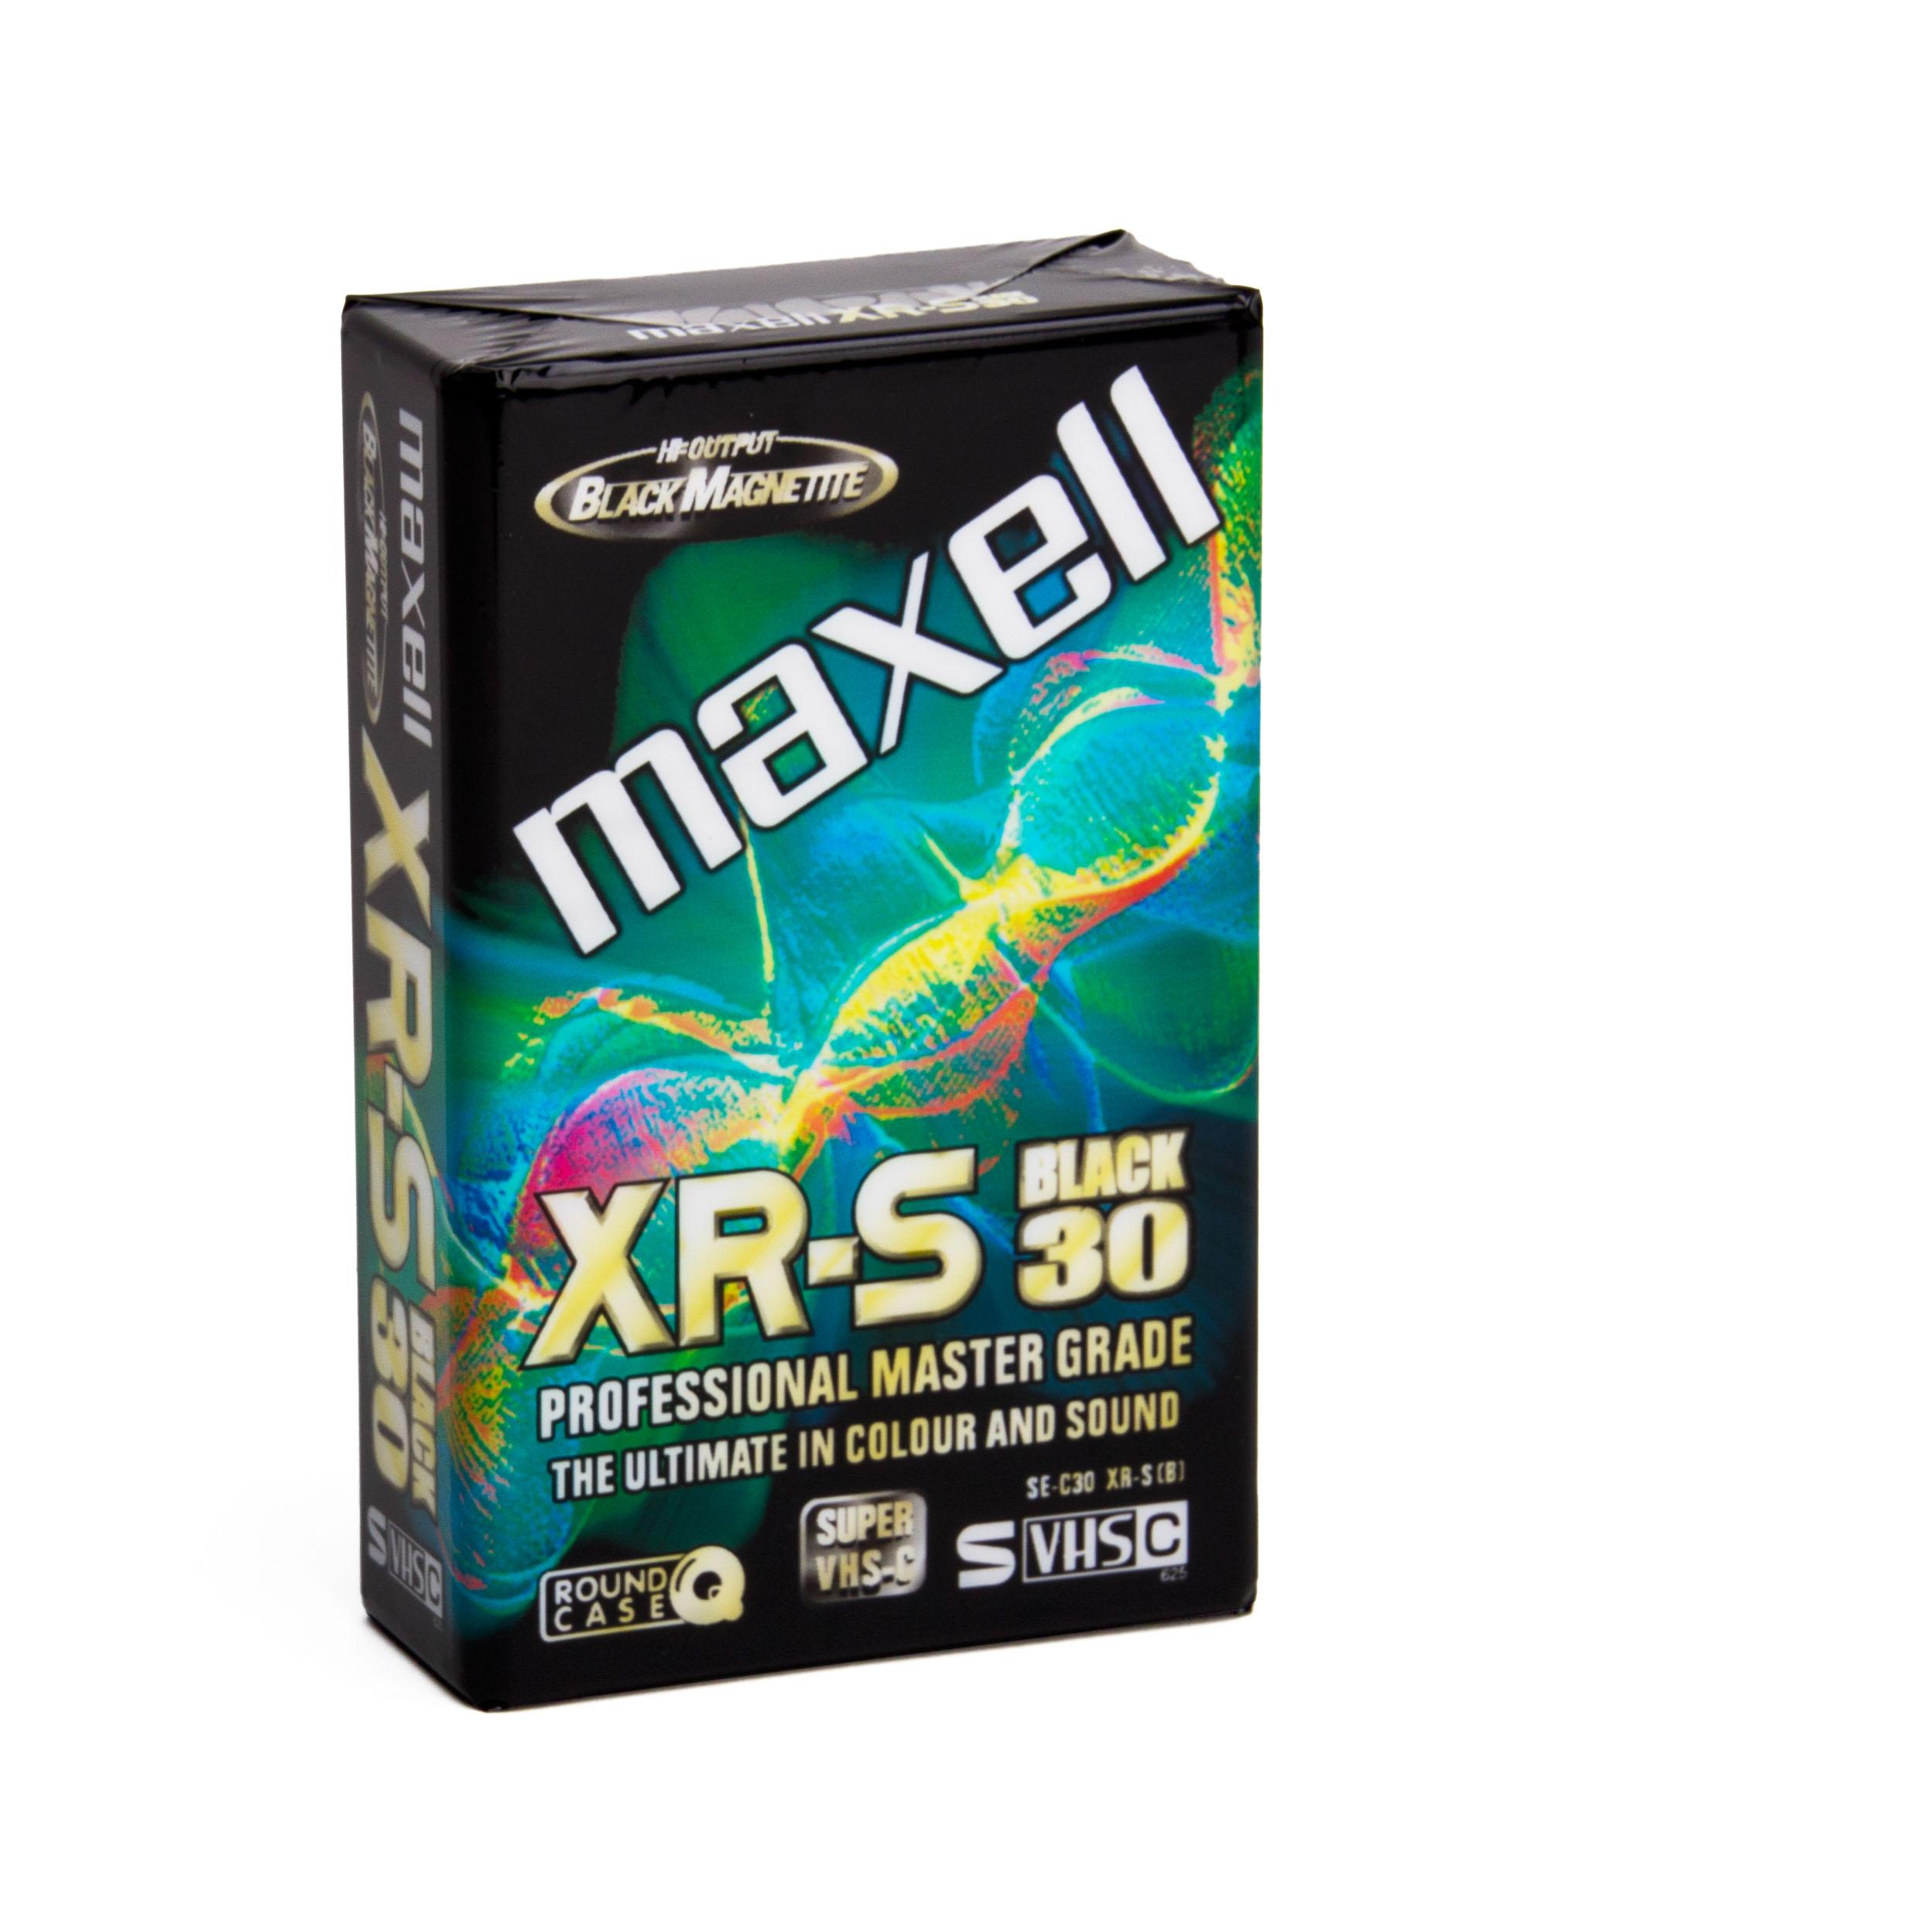 Maxell Xr S Black 30 S Vhs C Cassette Camcorder Empty Cassettes S Vhs Ebay